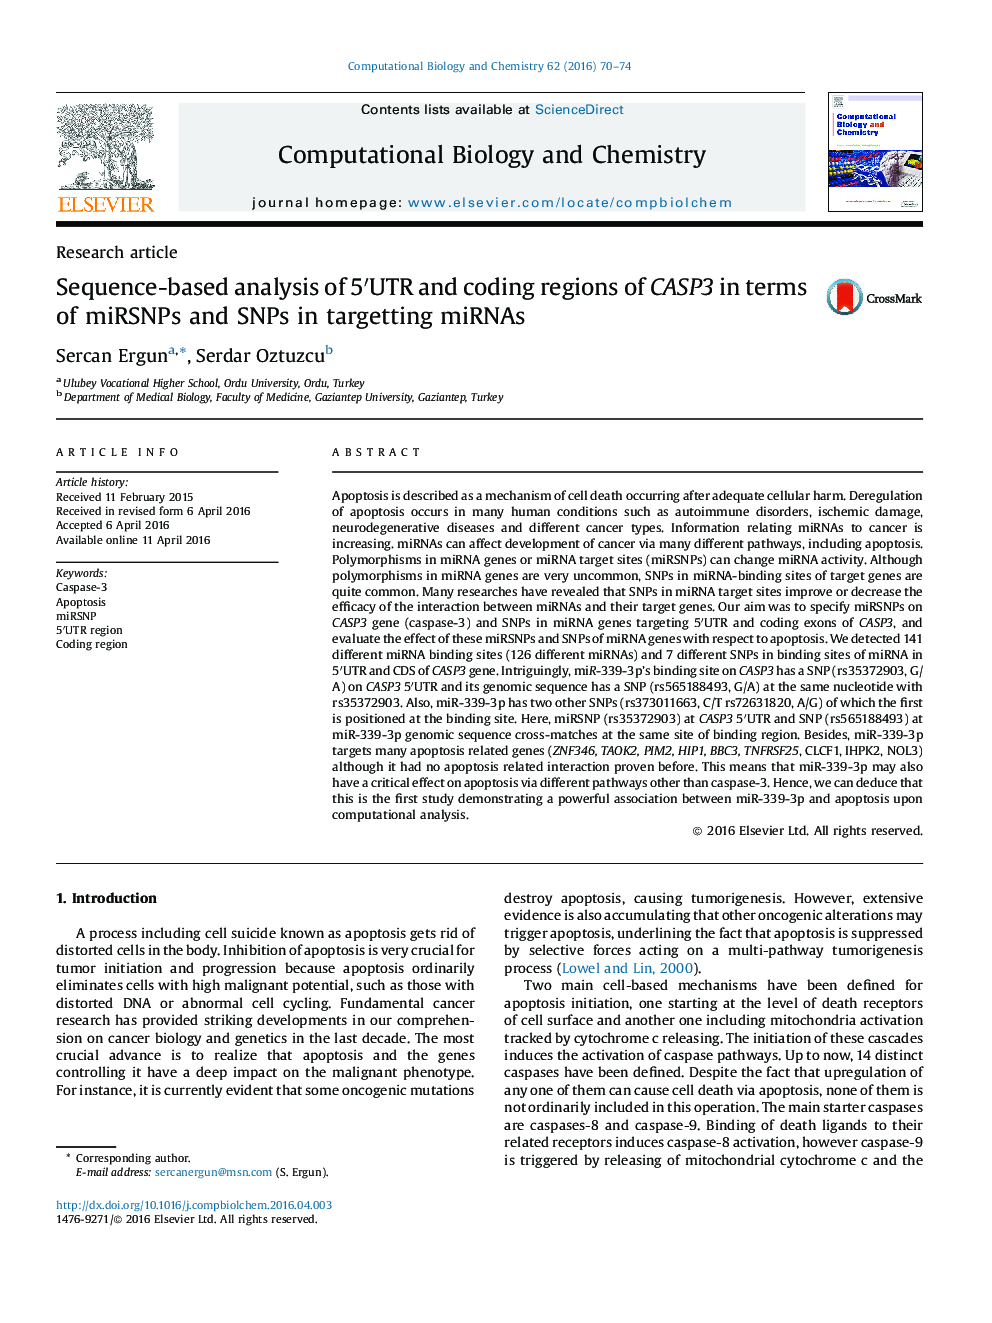 تجزیه و تحلیل مبتنی بر توالی 5'UTR و مناطق کدگذاری CASP3 از نظر miRSNPs و SNP در هدف گذاری miRNA ها 